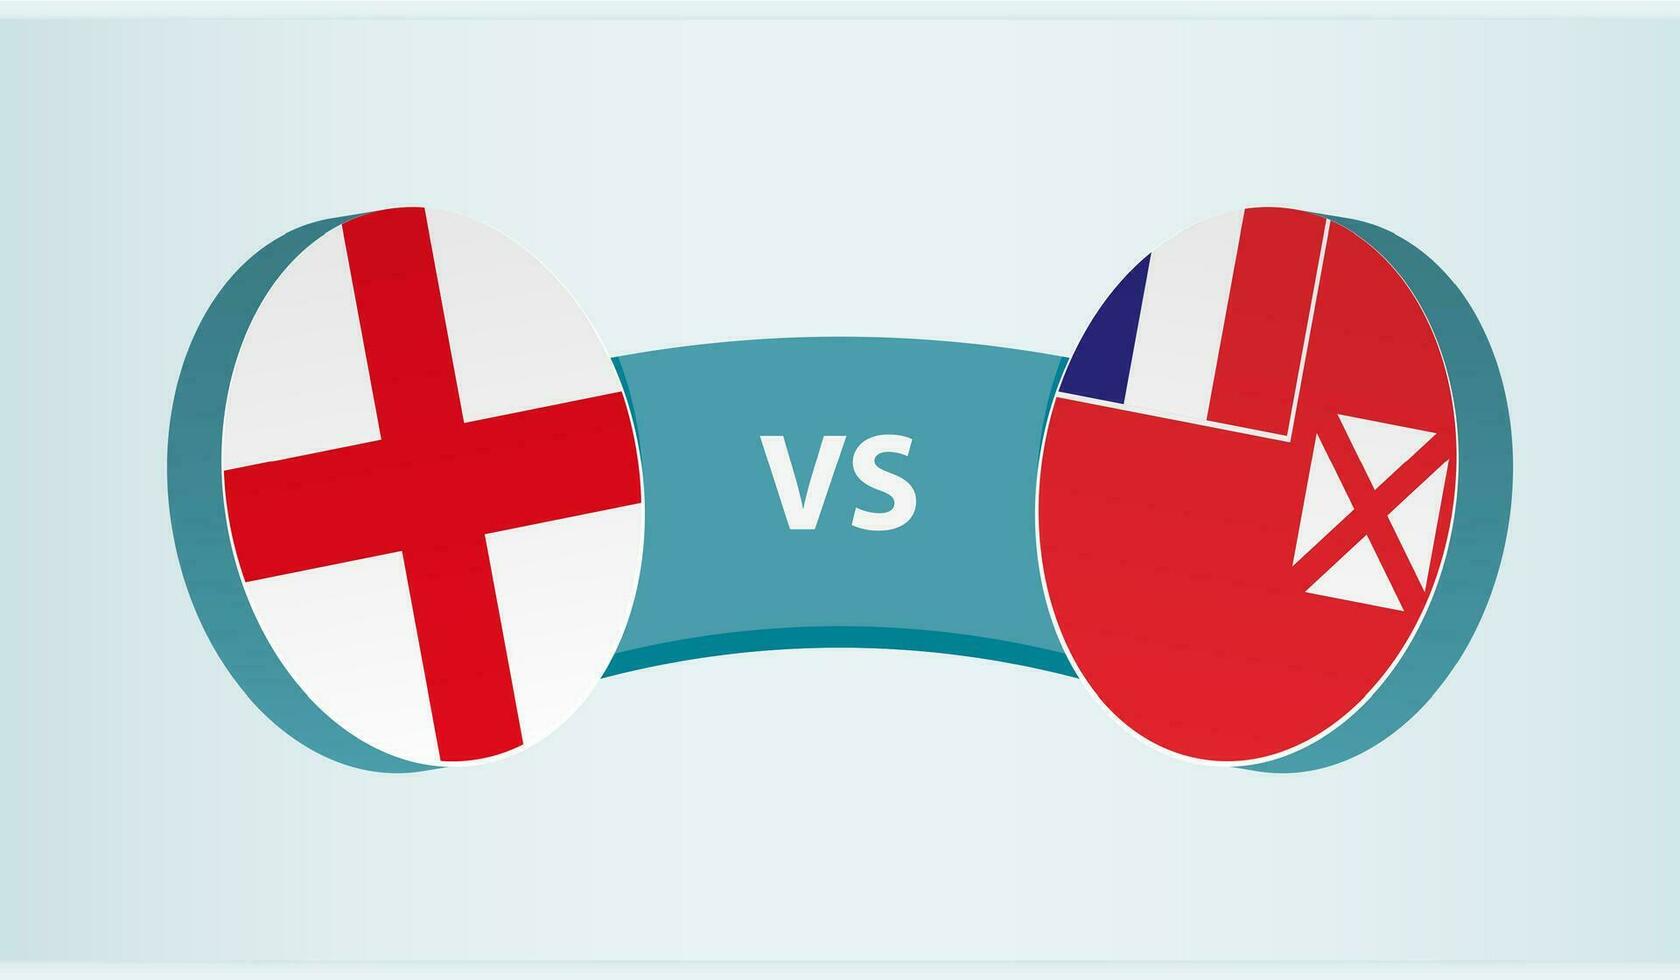 England mot wallis och futuna, team sporter konkurrens begrepp. vektor